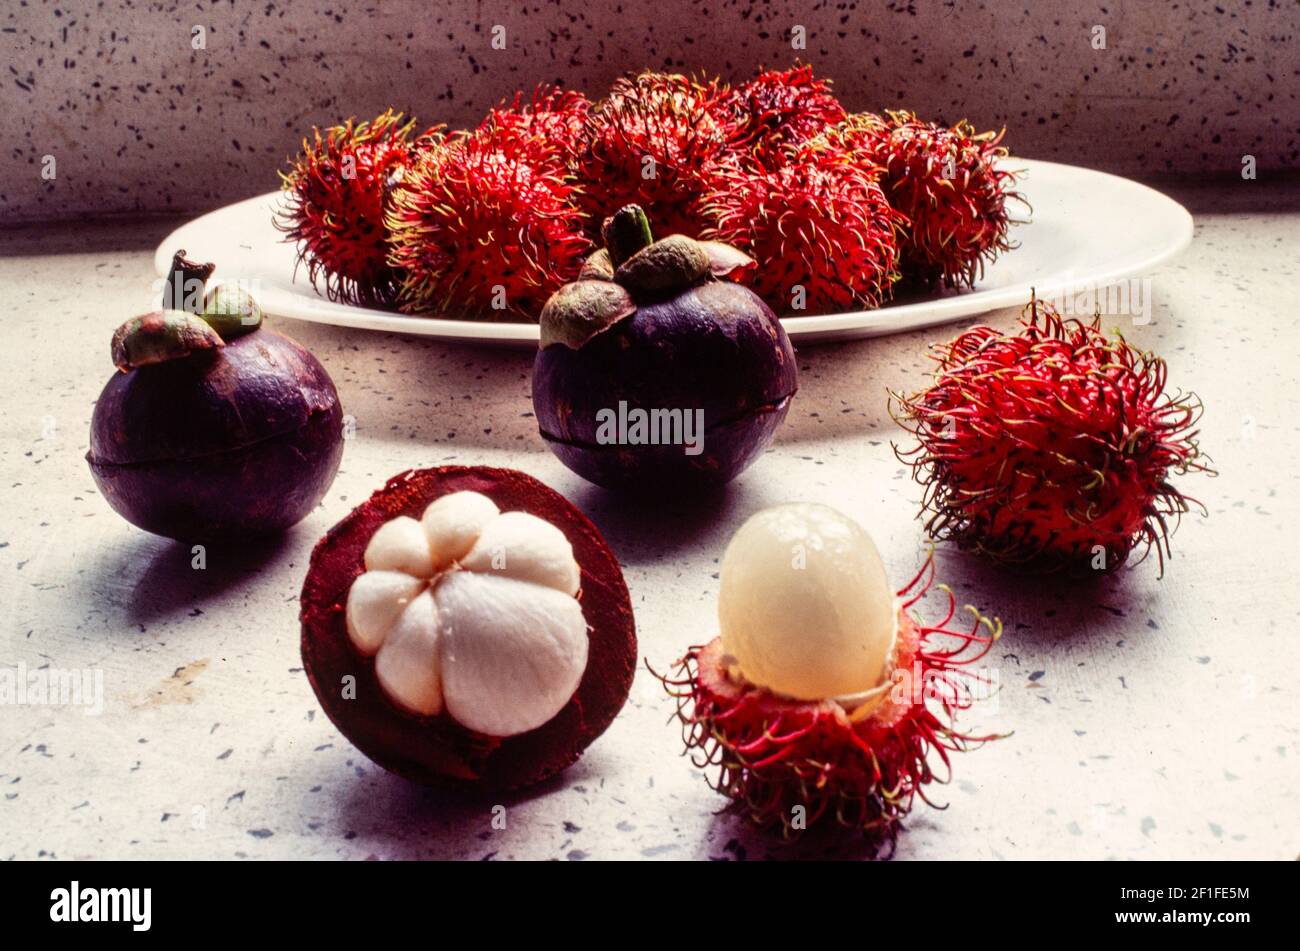 Les fruits vietnamiens, le mangoustan (Mang Cut) à gauche et le ramboutan (Chom Chom) ou le lychee poilu, Ho Chi Minh ville, Vietnam, juin 1980 Banque D'Images